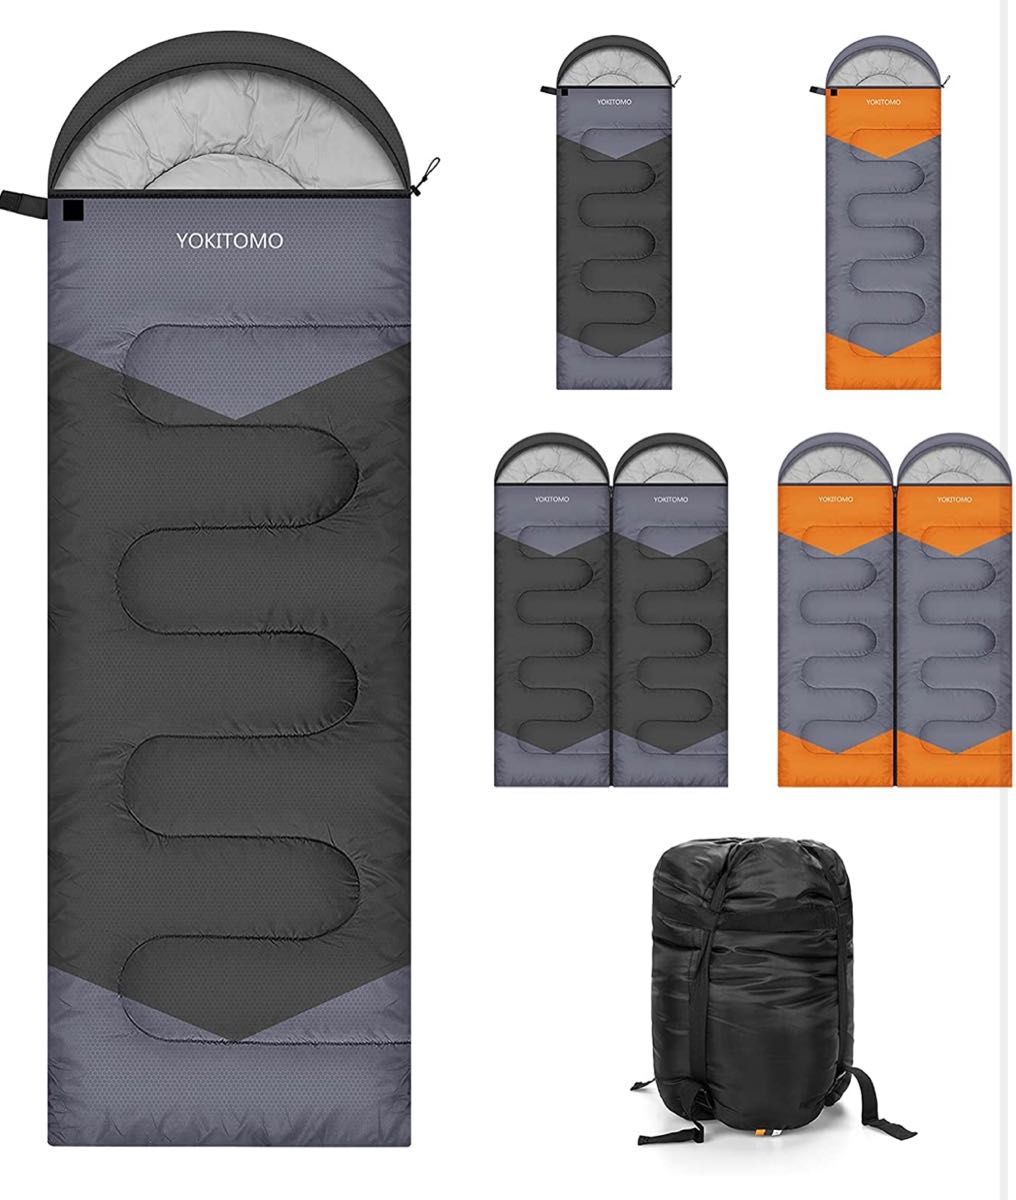 寝袋 シュラフ 封筒型 YOKITOMO 高い保温性の中綿 二個で連結可能 防水 寝袋シュラフ